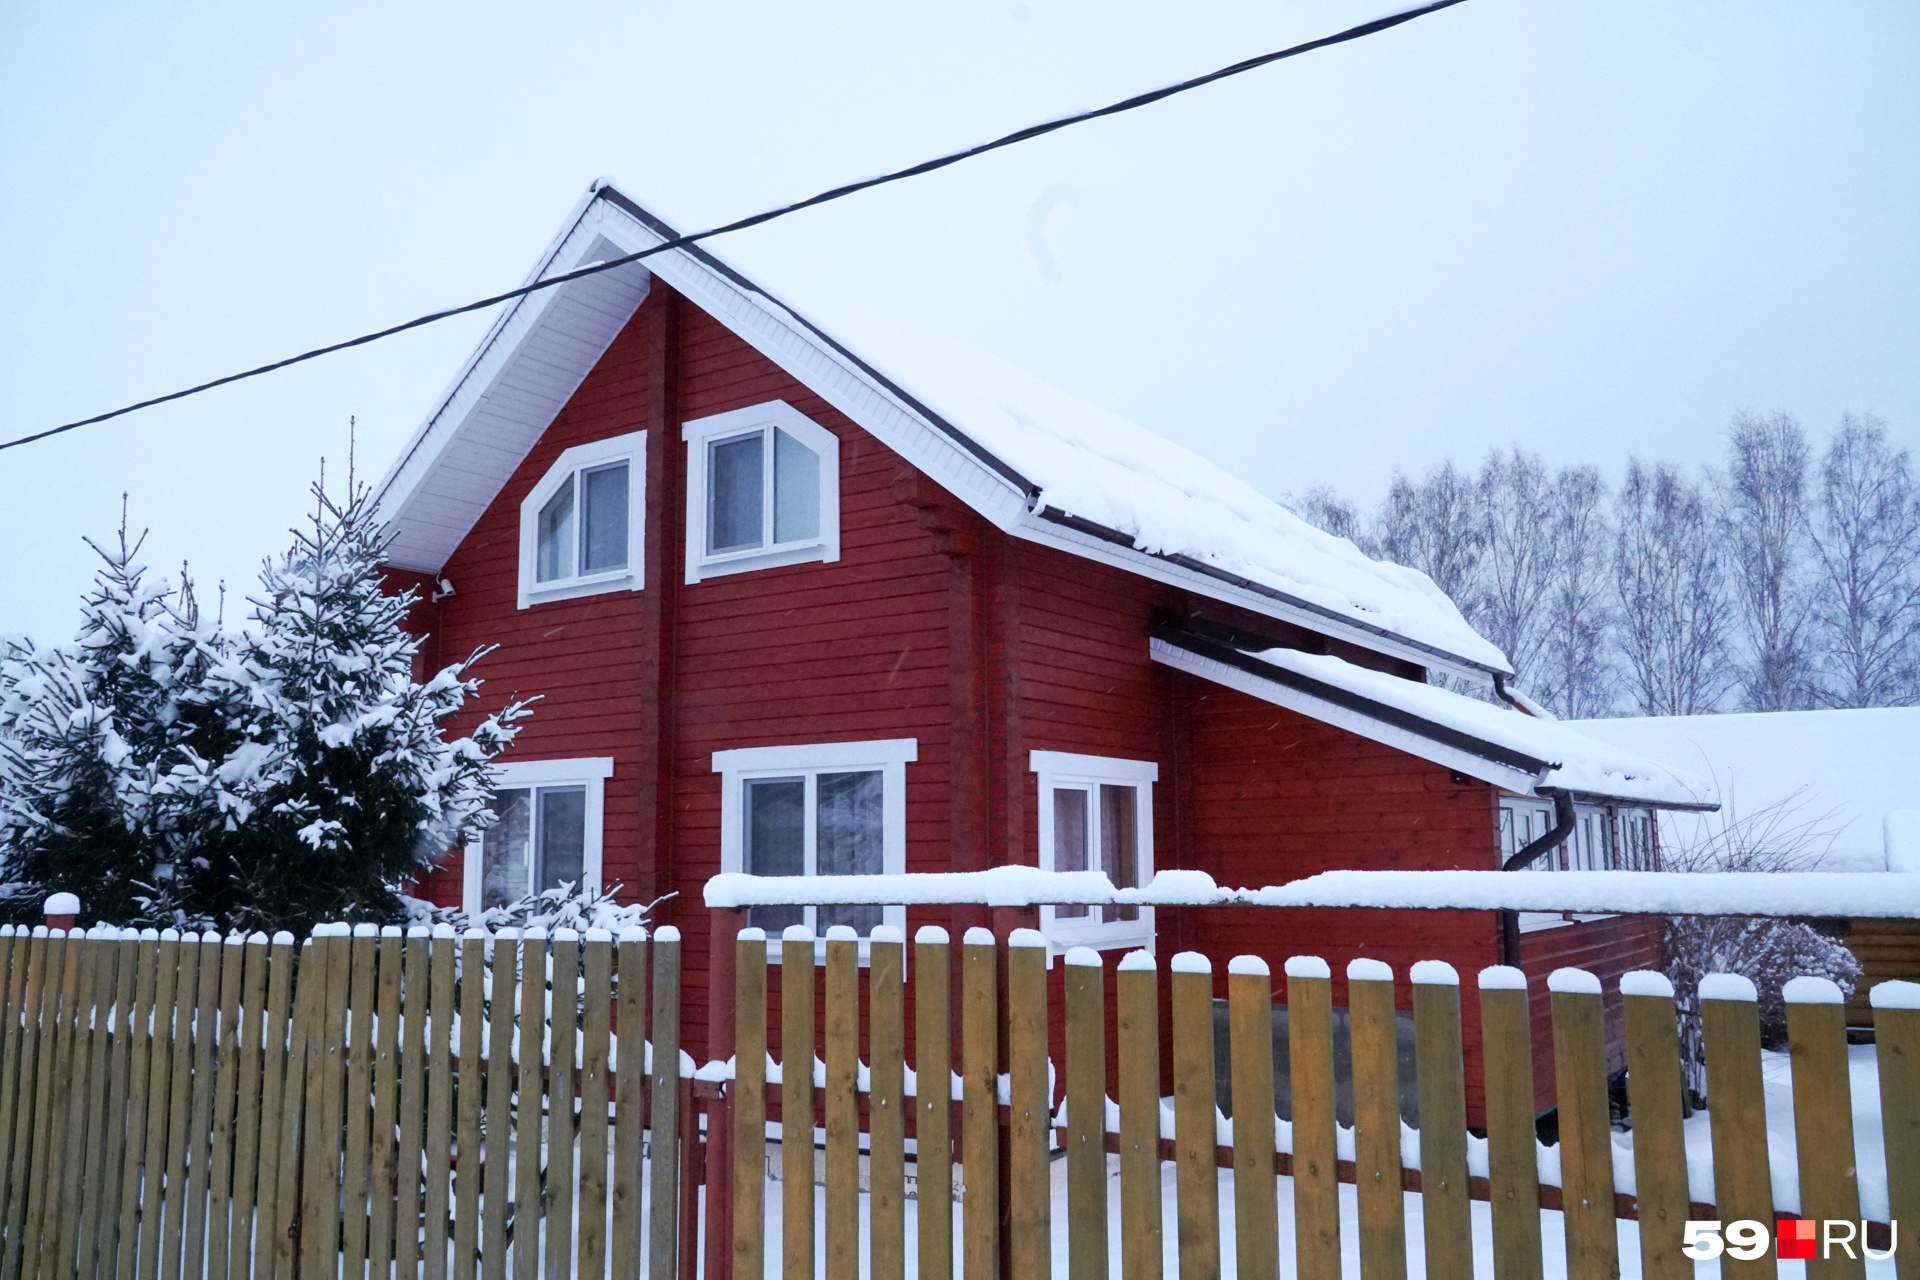 Ещё один дом в СНТ «Калина красная», в котором живут люди